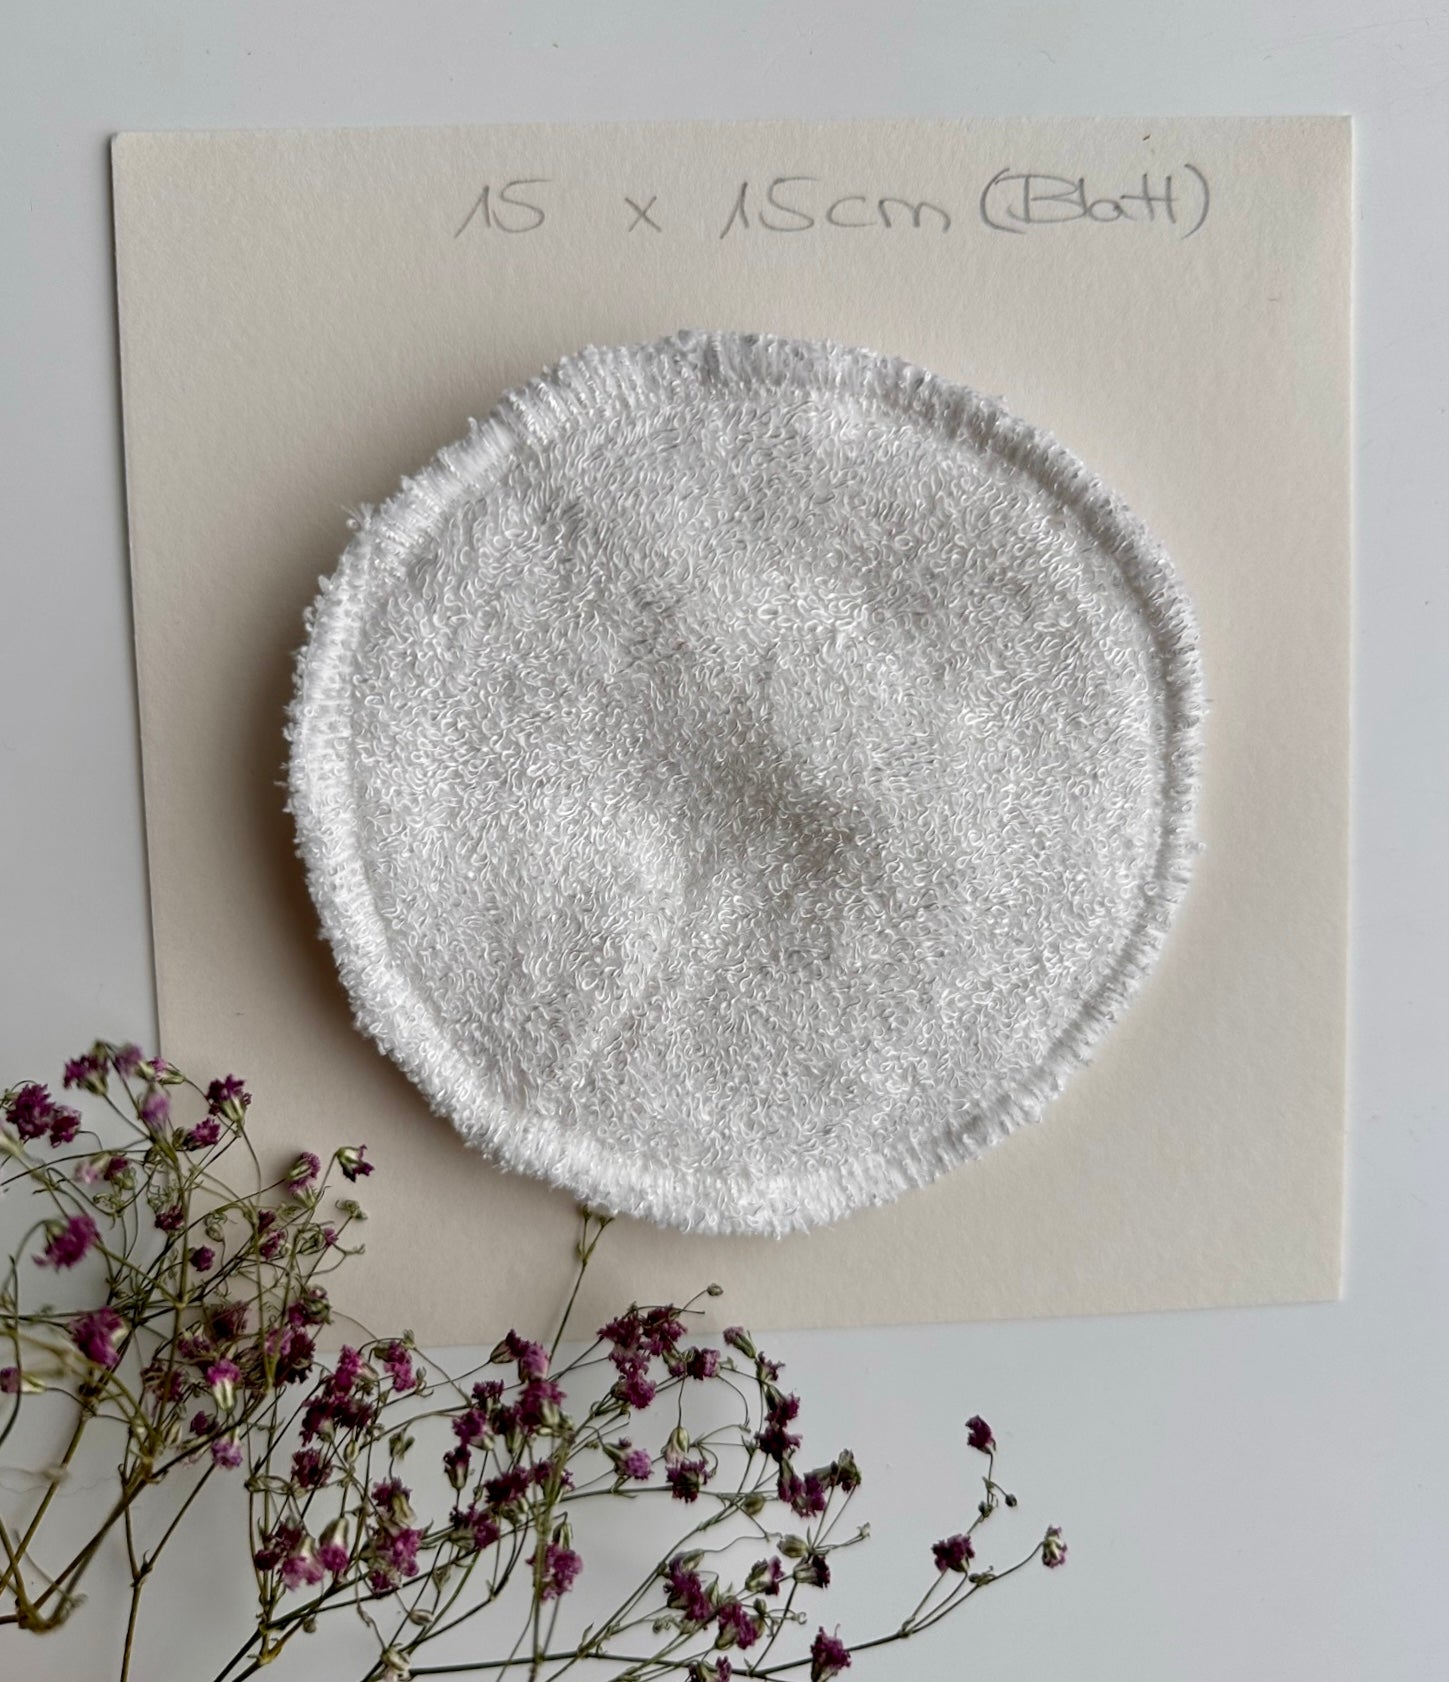 Stilleinlage aus Baumwolle mit Größendarstellung - ca 10 cm x 10 cm.